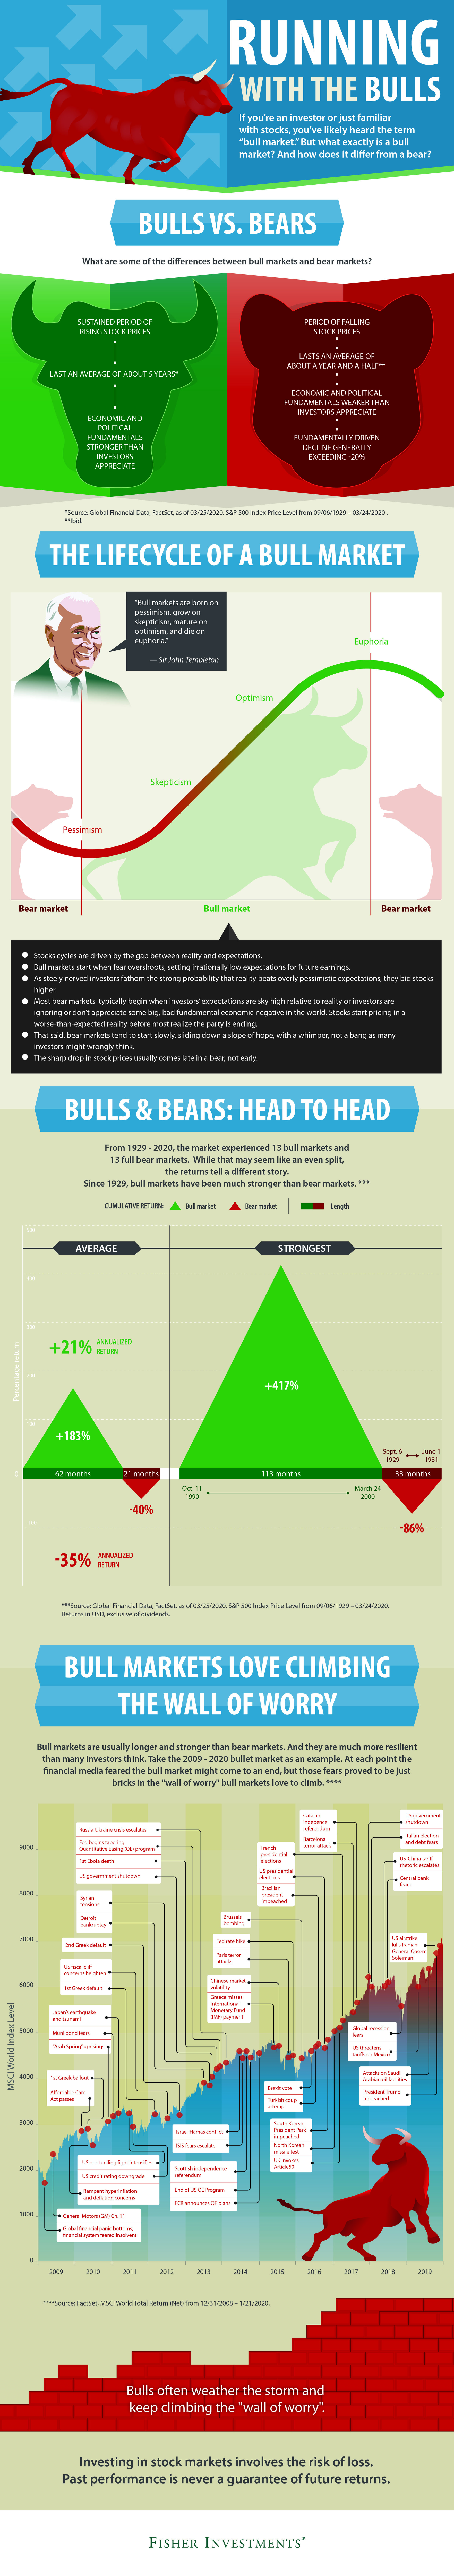 Bull Market Infographic